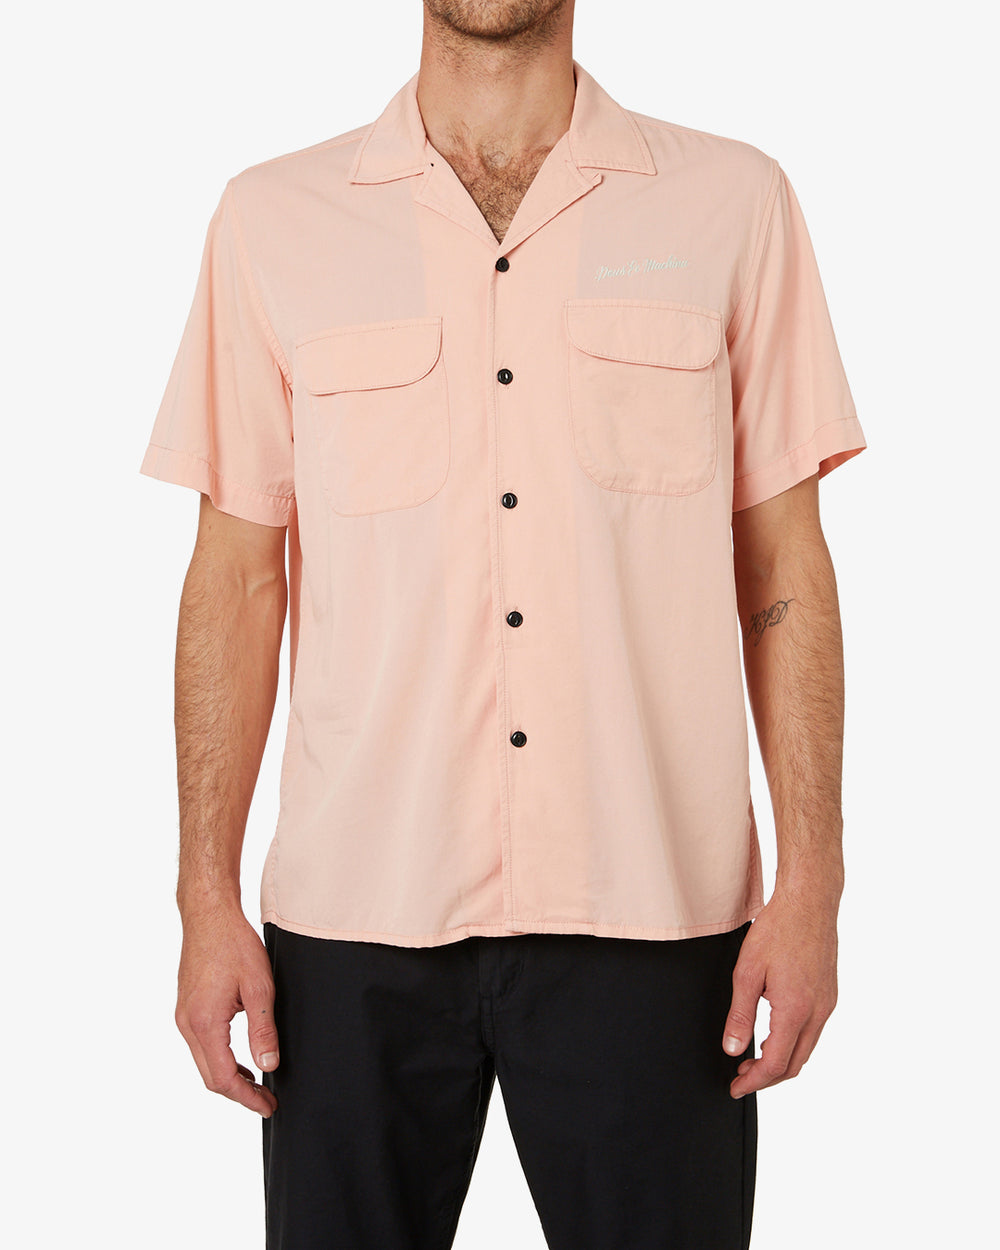 Kingpin Gd Shirt Coral Pink